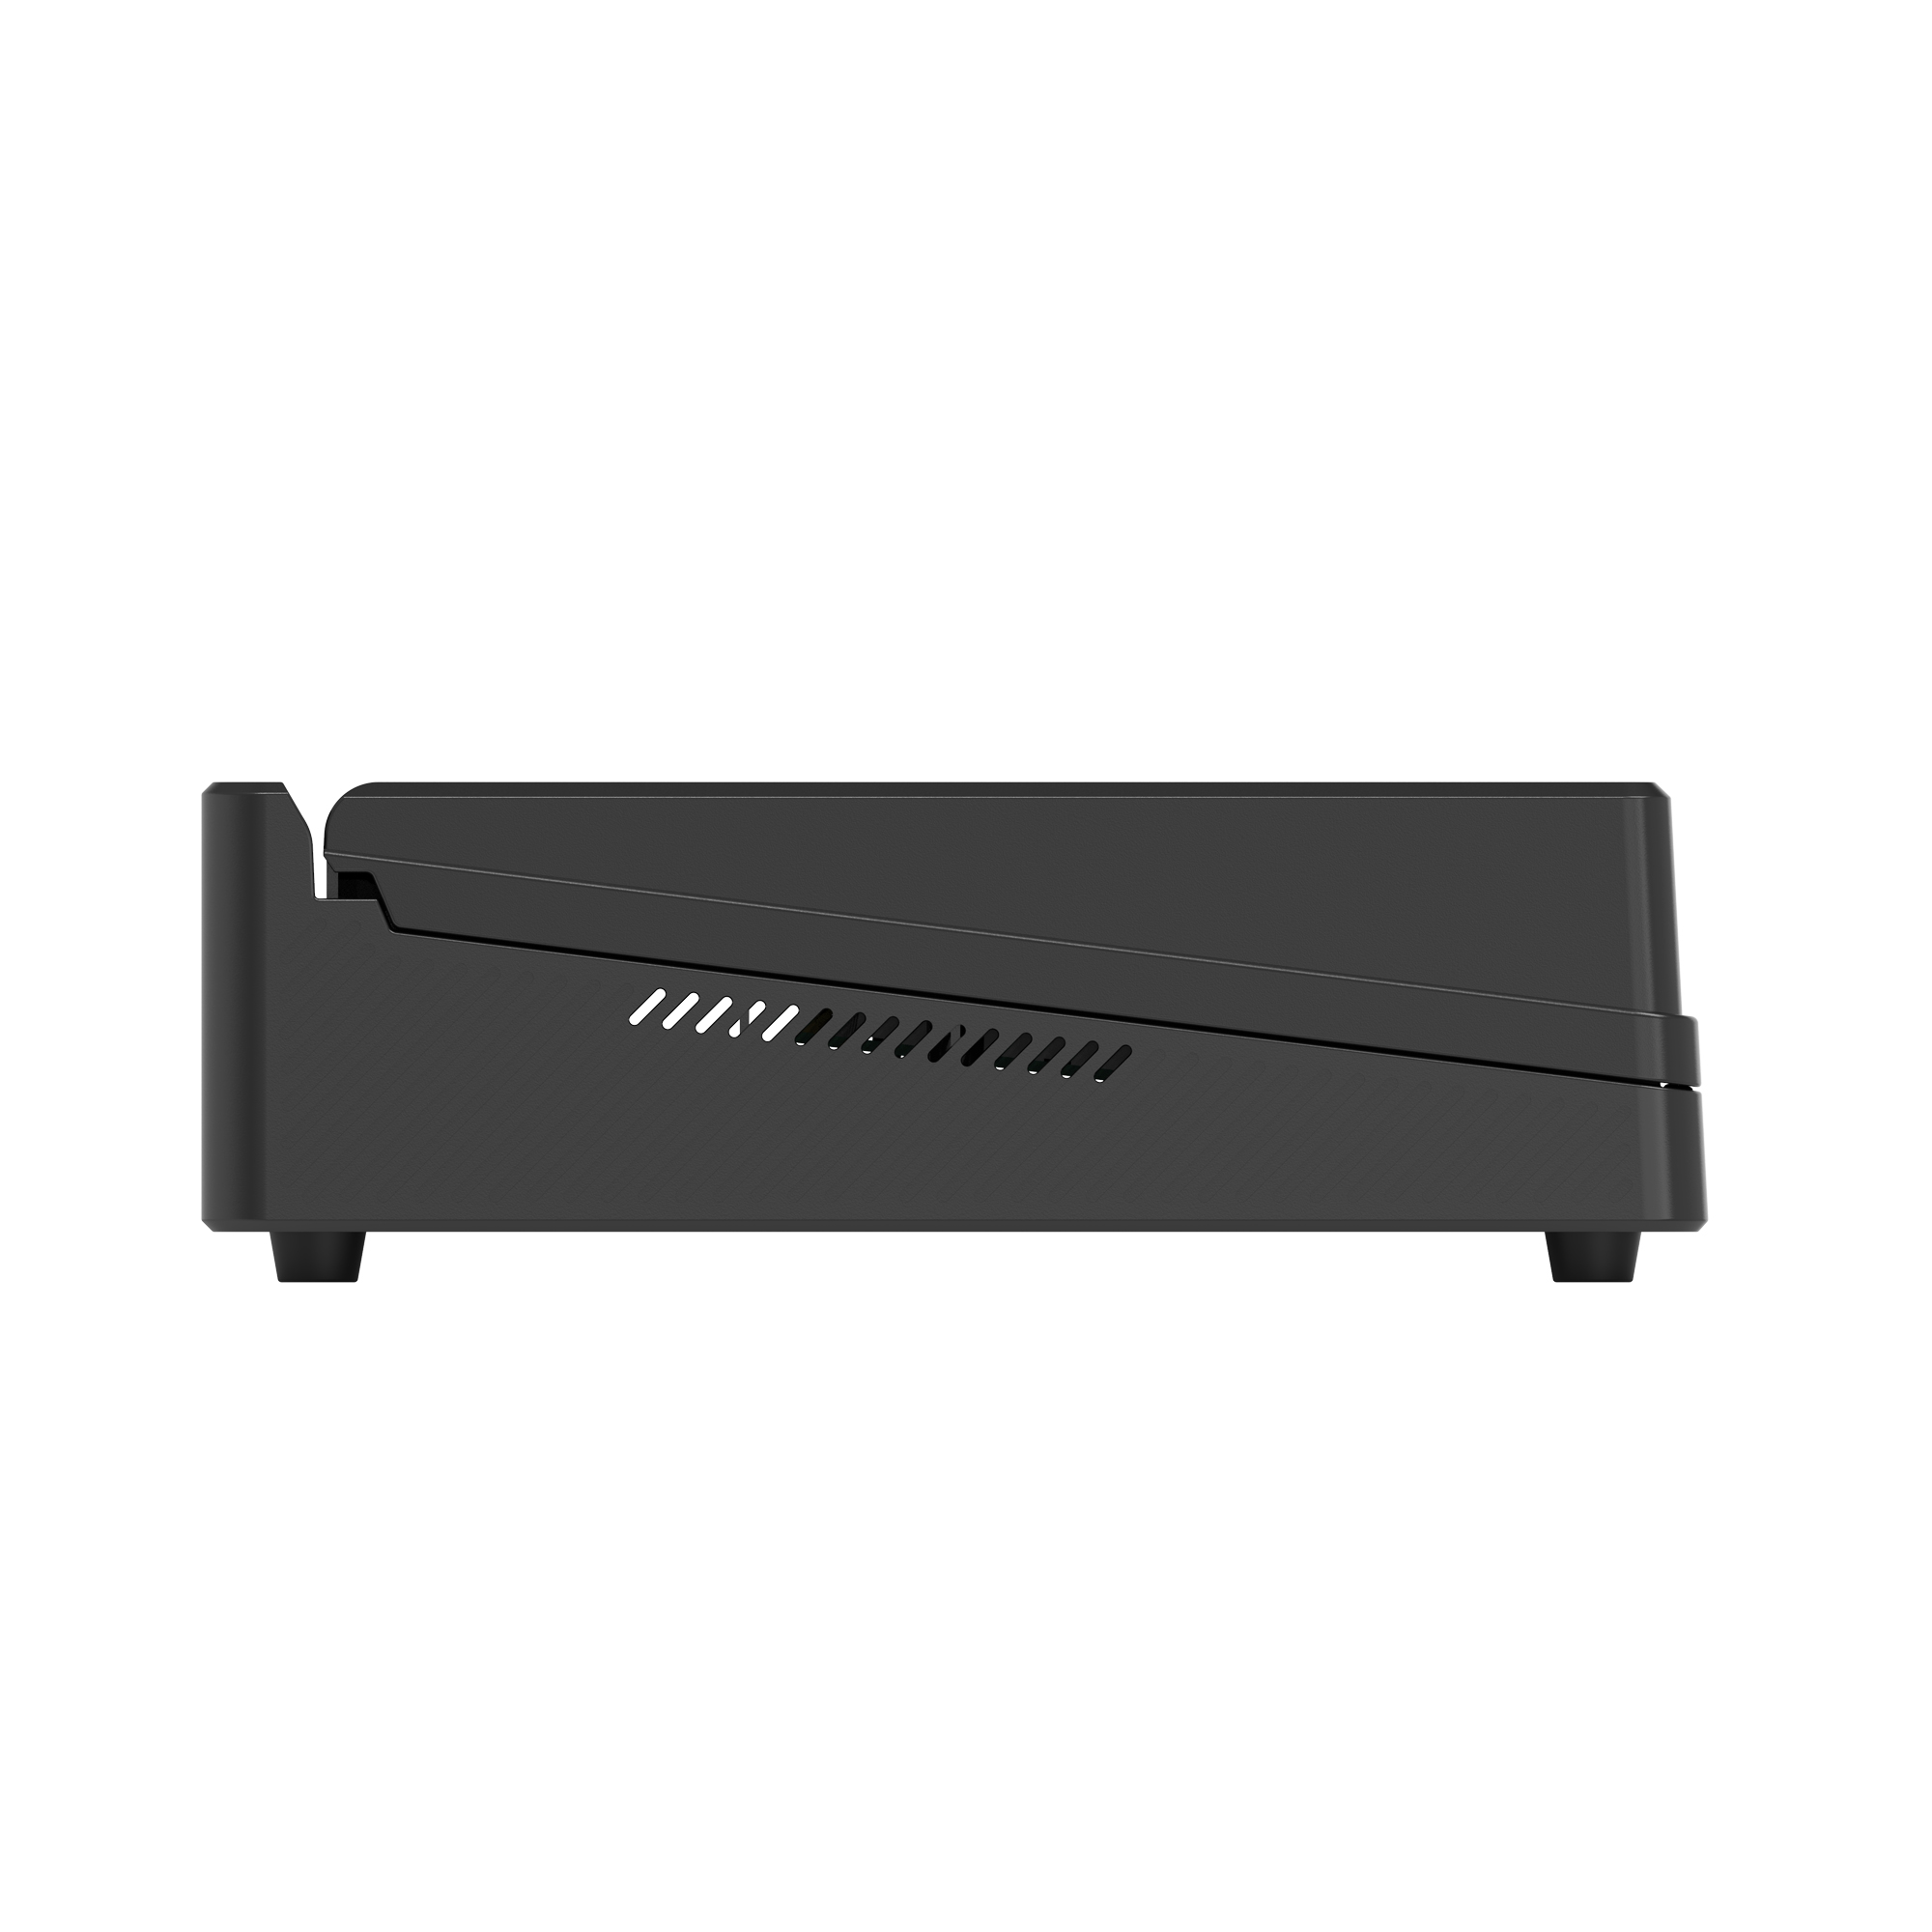   AVMATRIX PVS0403U  4CH SDI/HDMI USB   Ultra-mart